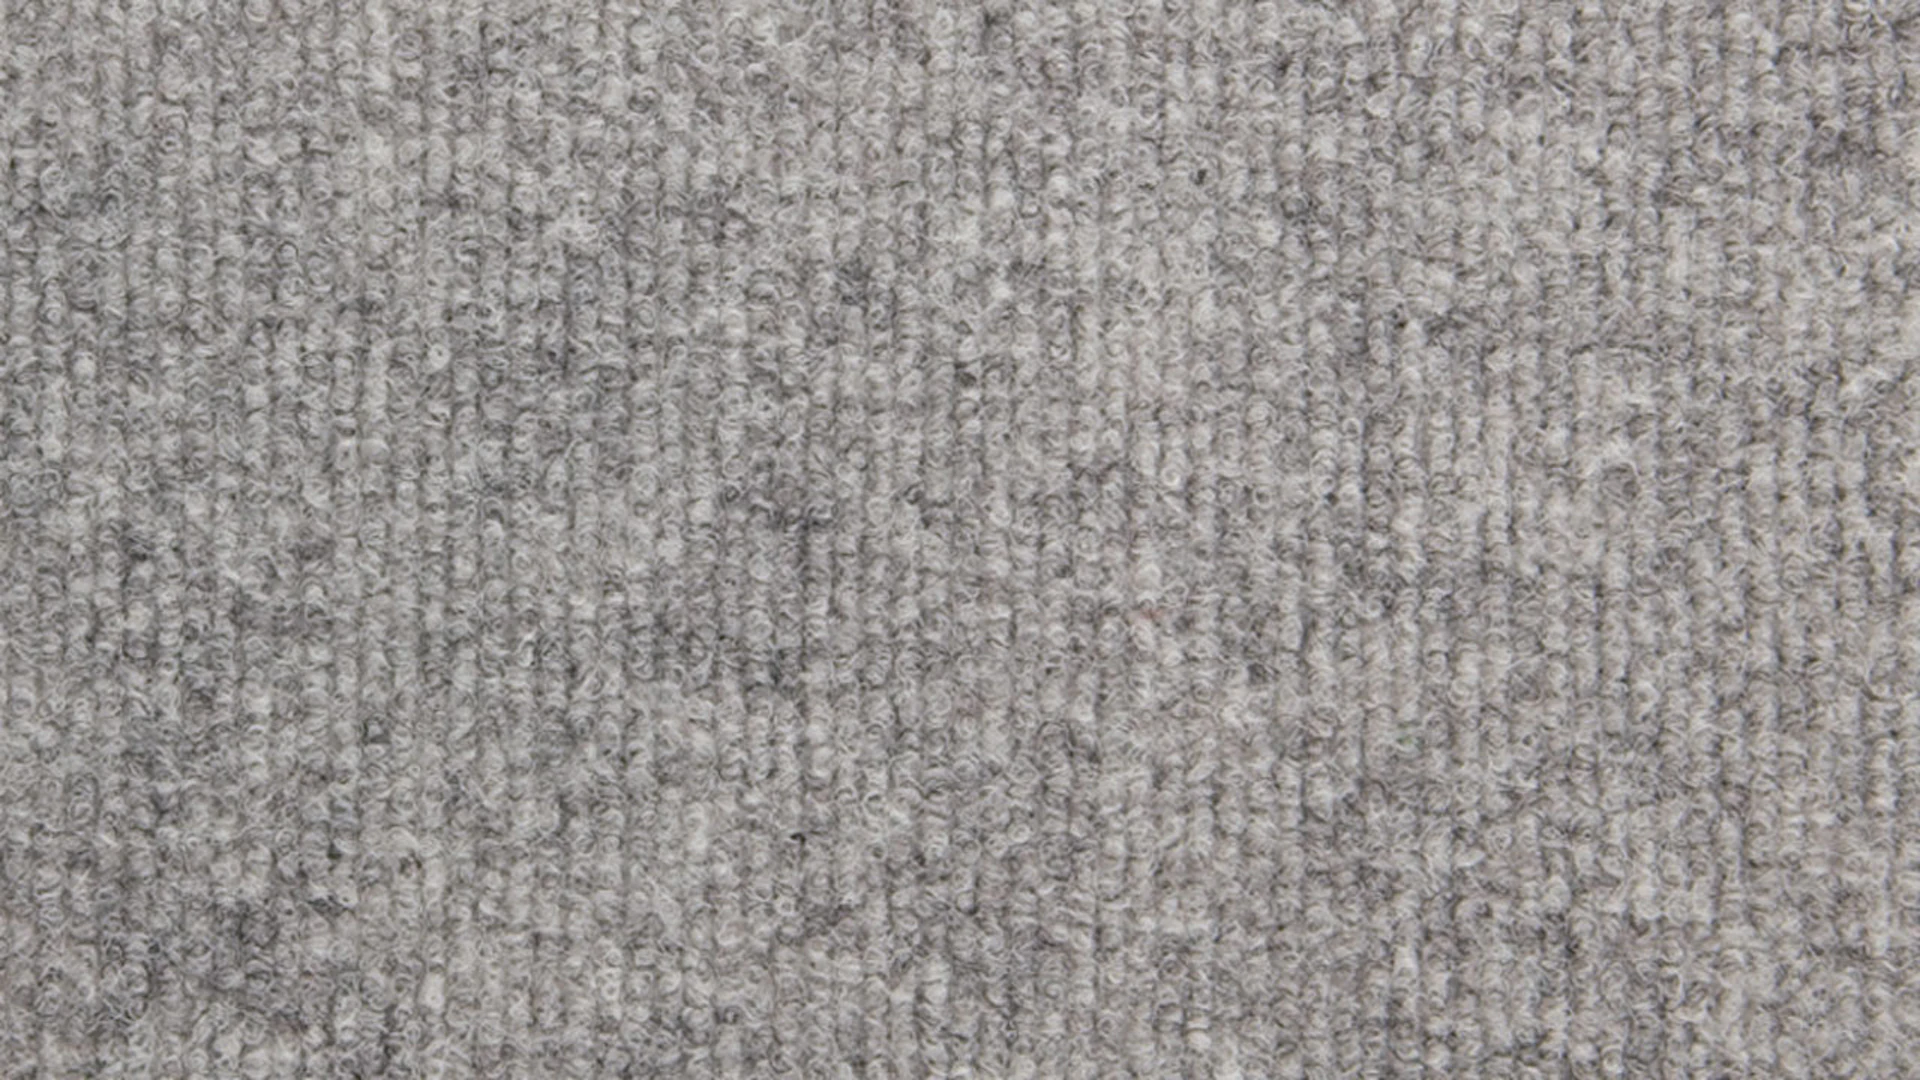 planeo carpet tile 50x50 Rex 901 Grey